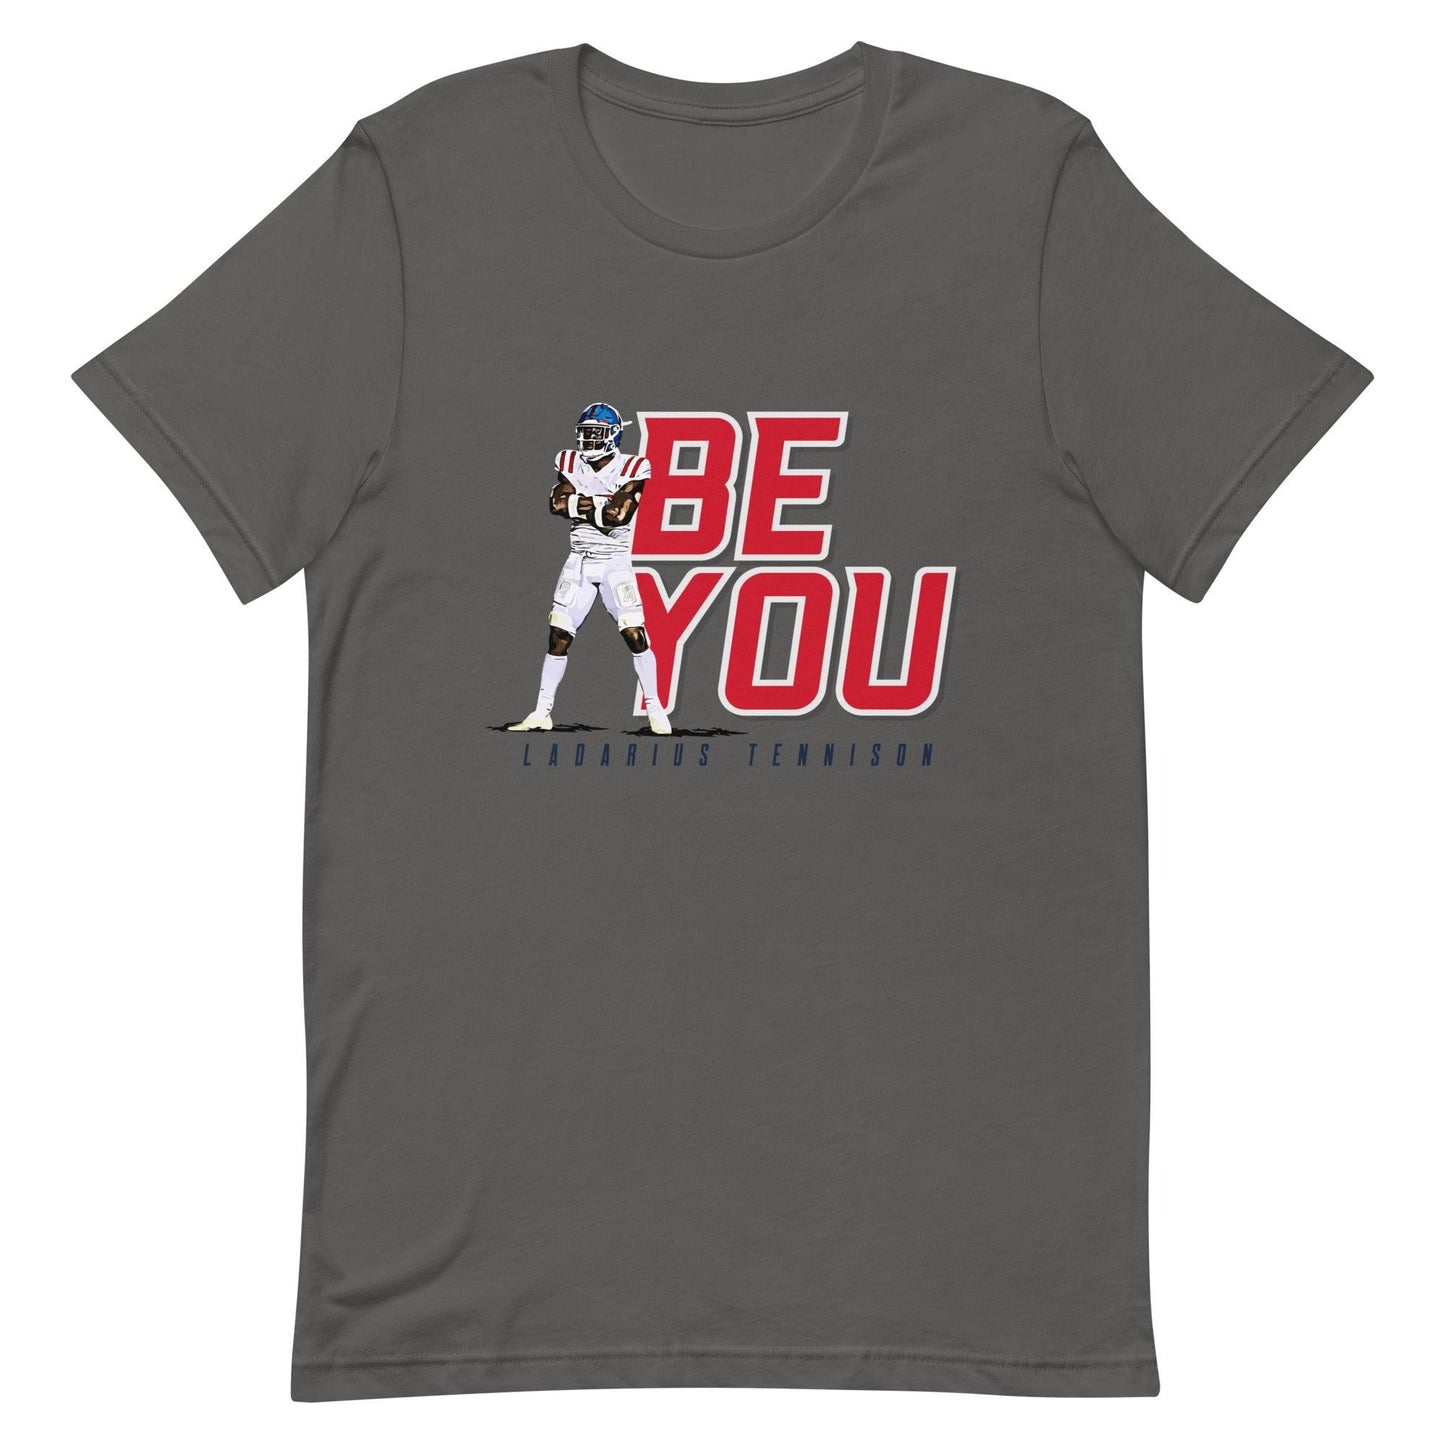 Ladarius Tennison "Be You" t-shirt - Fan Arch